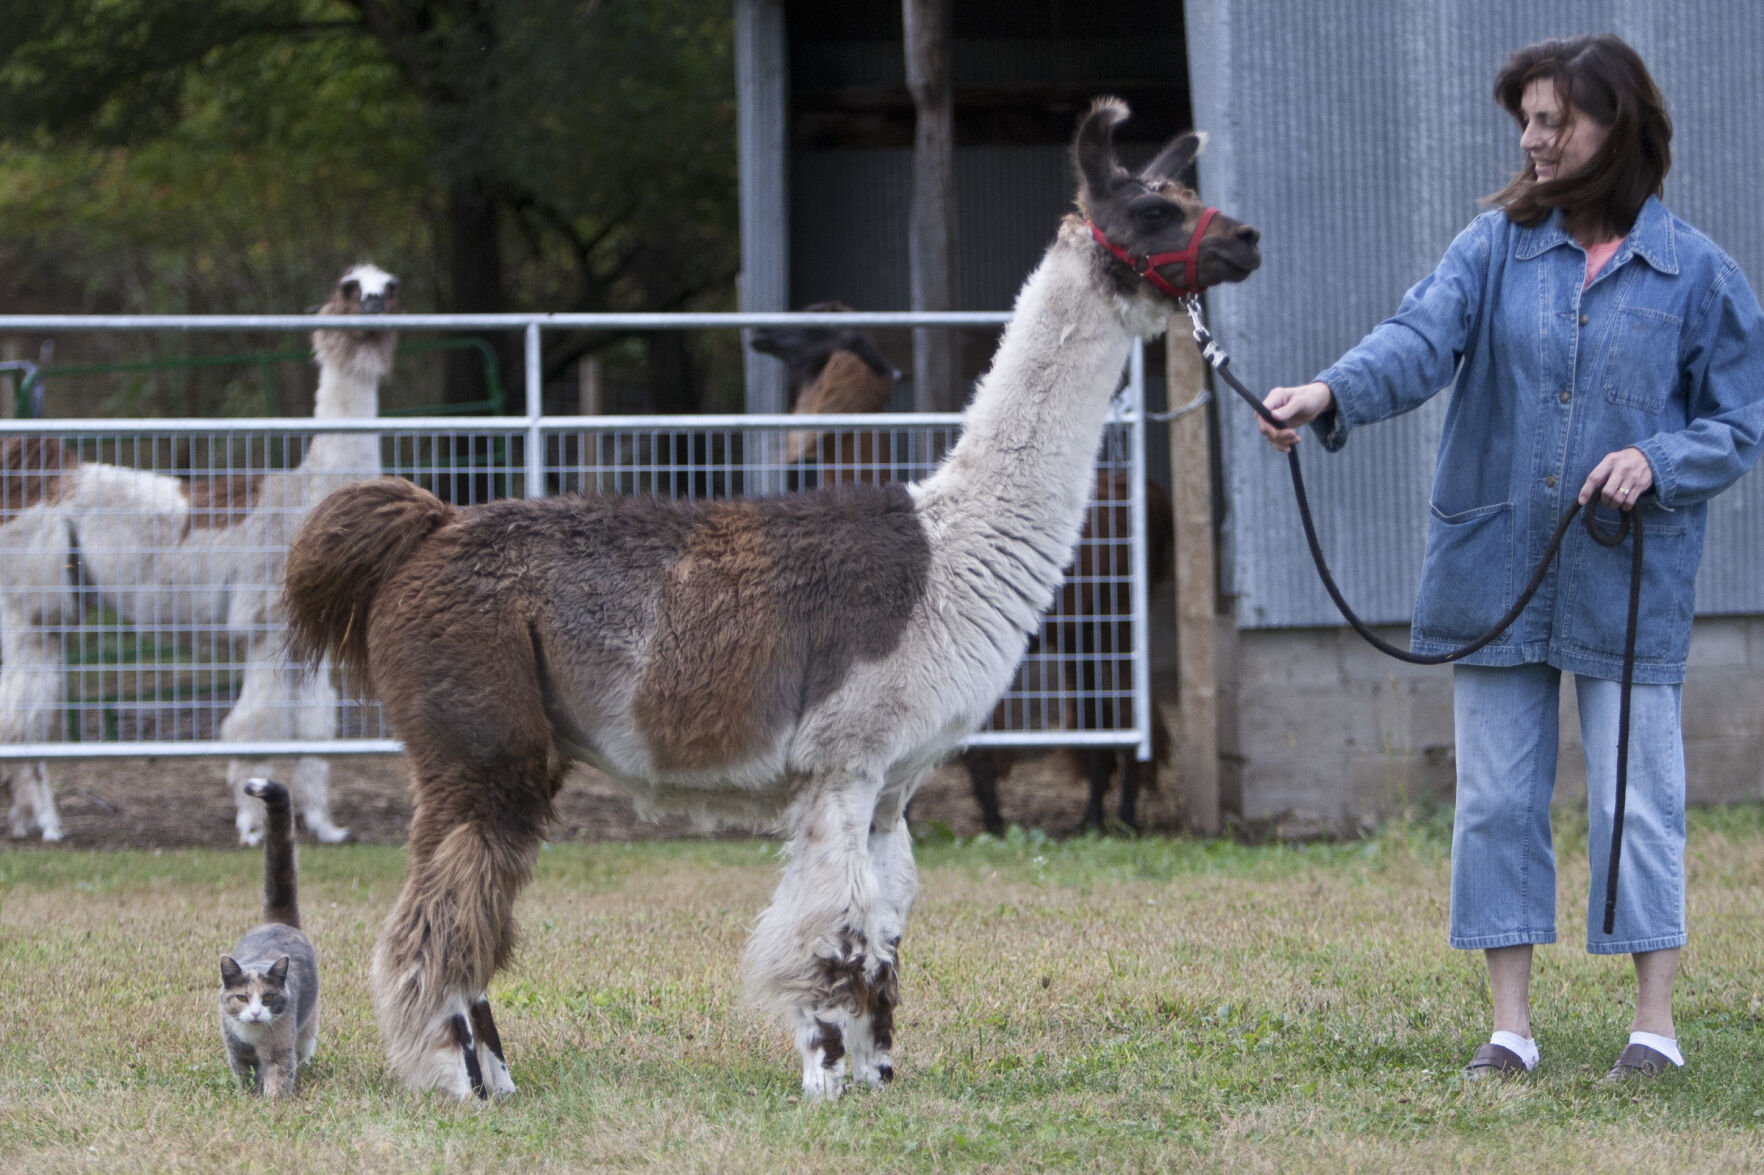 Hastings' little llamas: Local farm raises miniature llamas